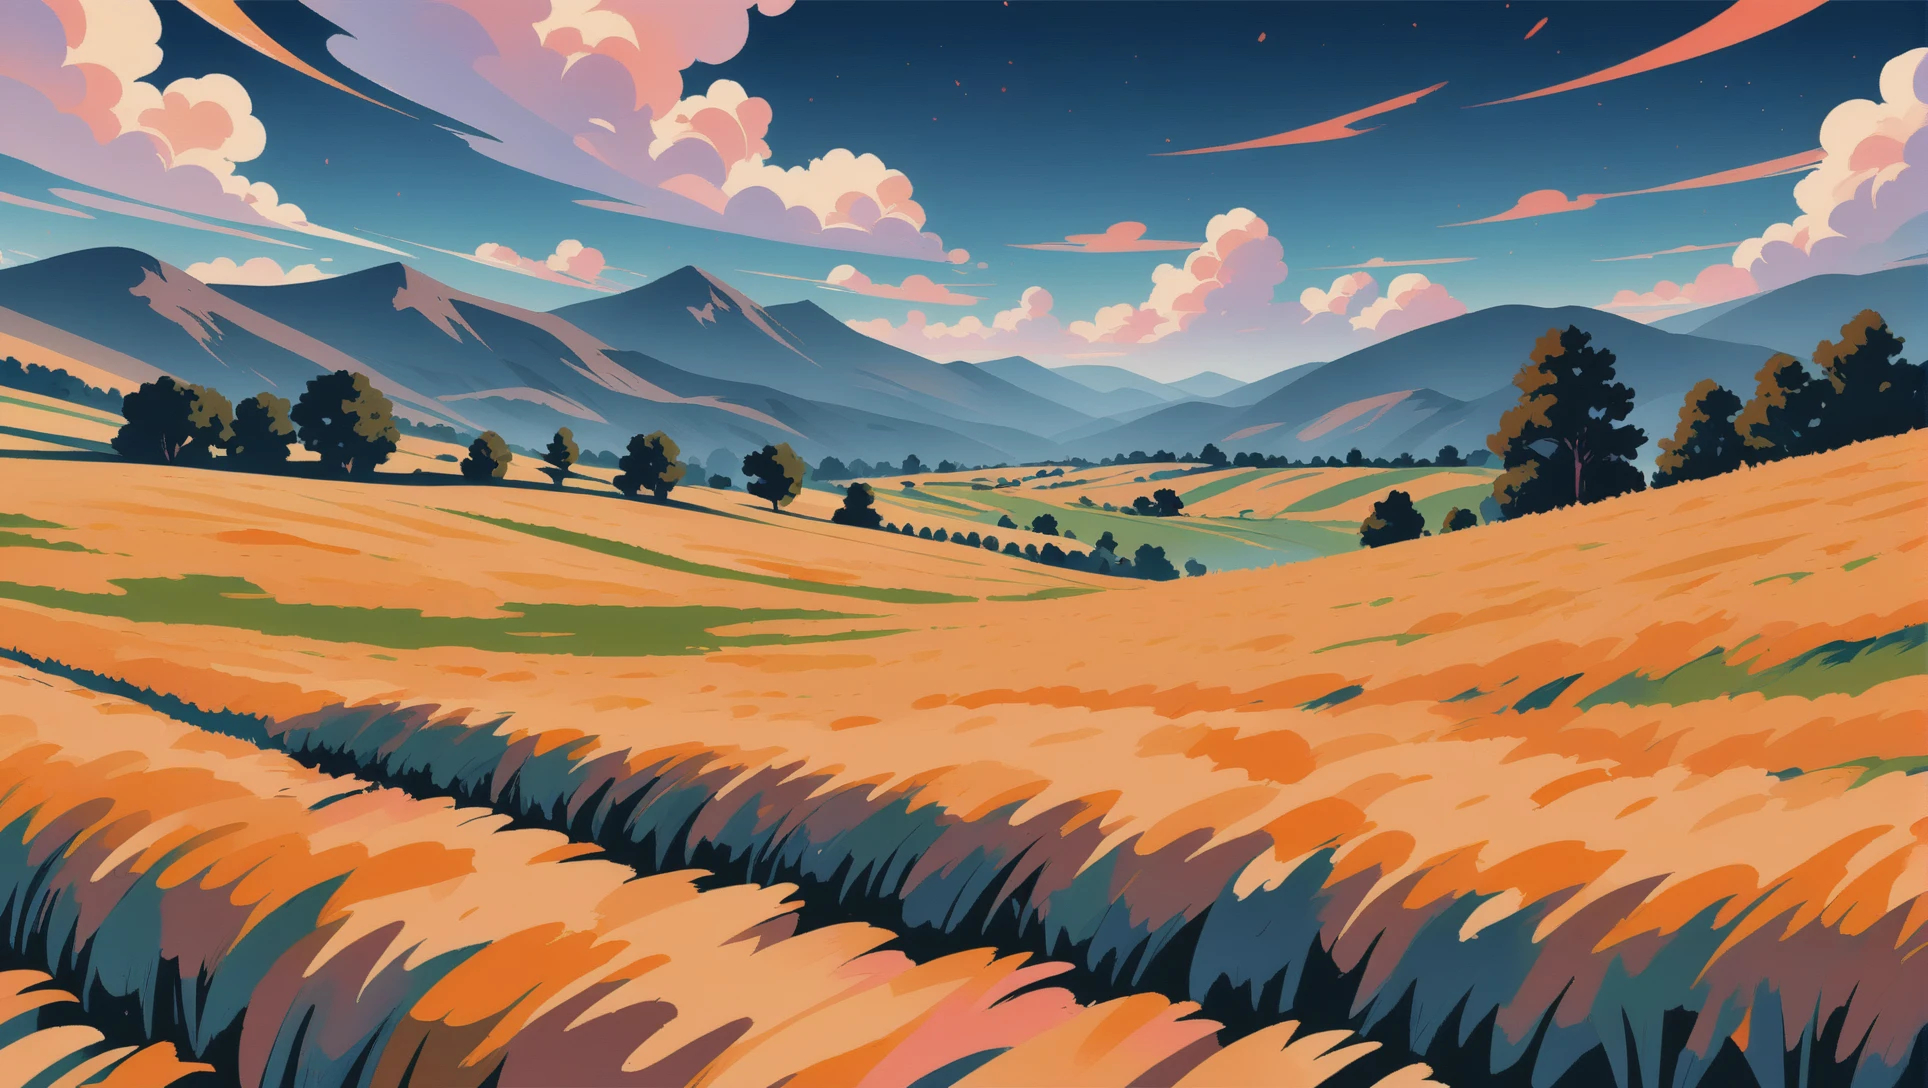 матовая живопись в стиле аниме, пшеничное поле среди холмов